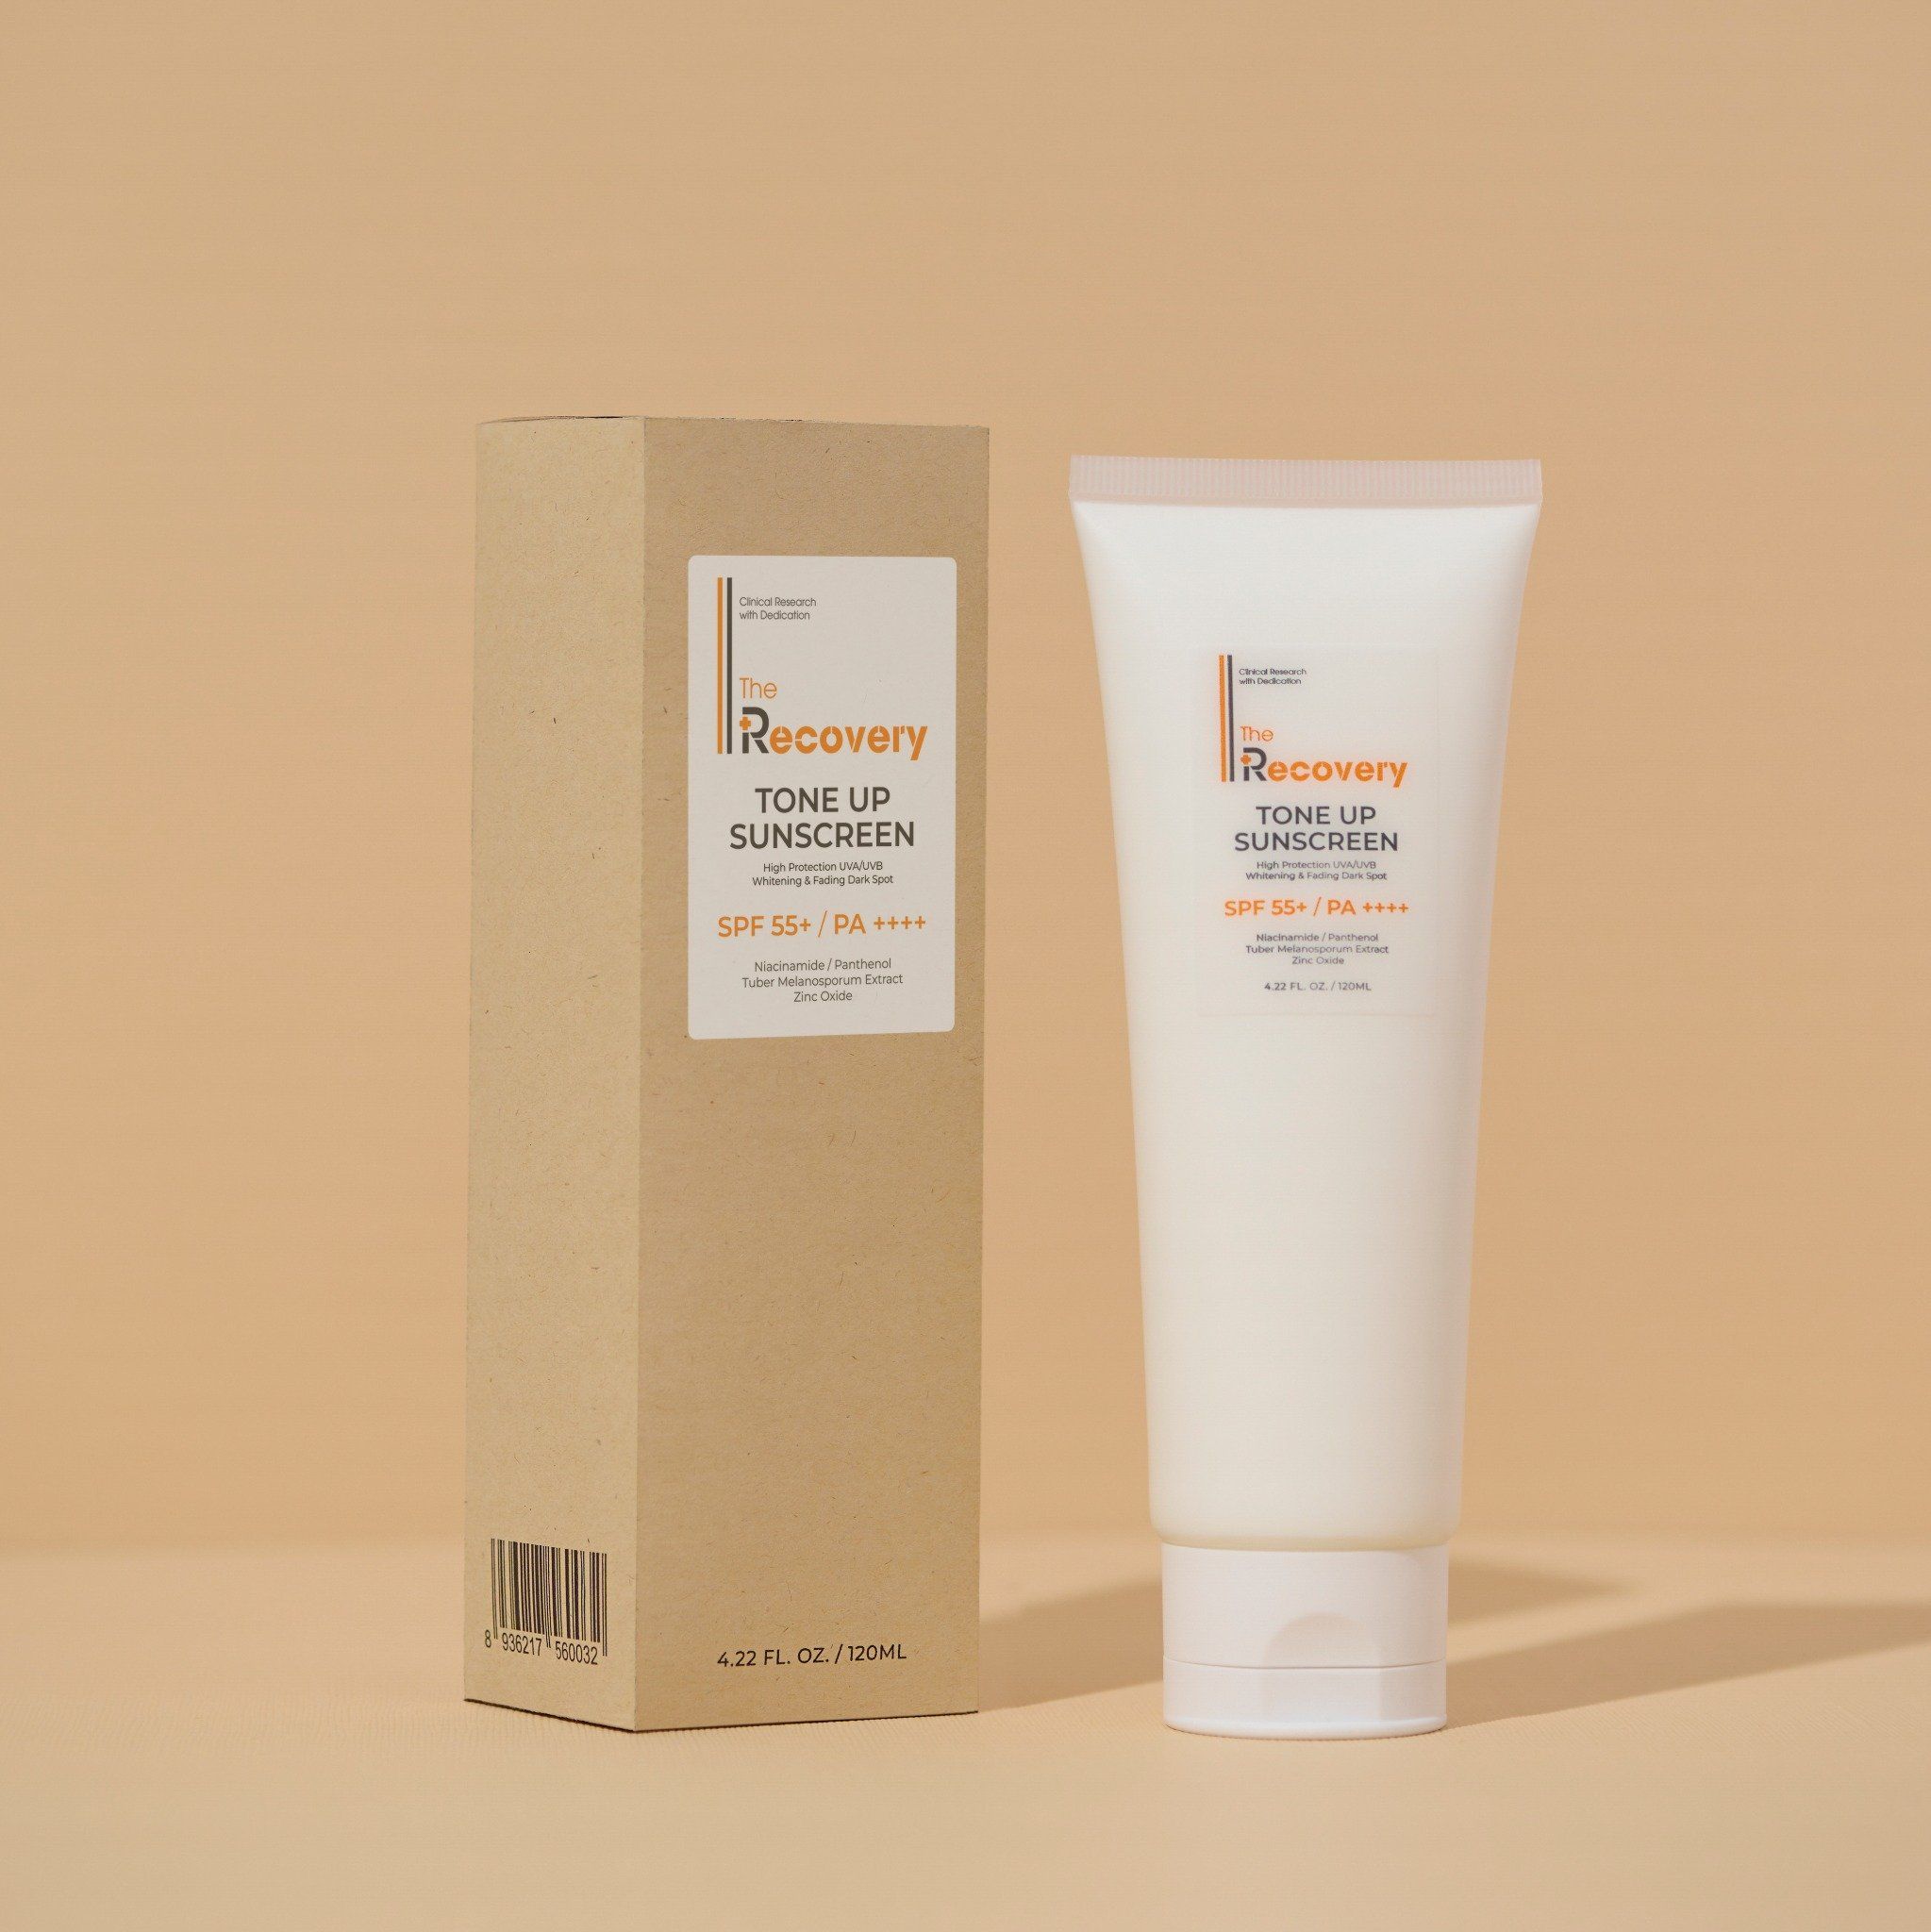 Chào mừng bạn đến với The Recovery Tone Up Sunscreen SPF 55 một sản phẩm chủ thương hiệu mỹ phẩm The Recovery, nguyên liệu nhập khẩu 100% từ Châu Âu